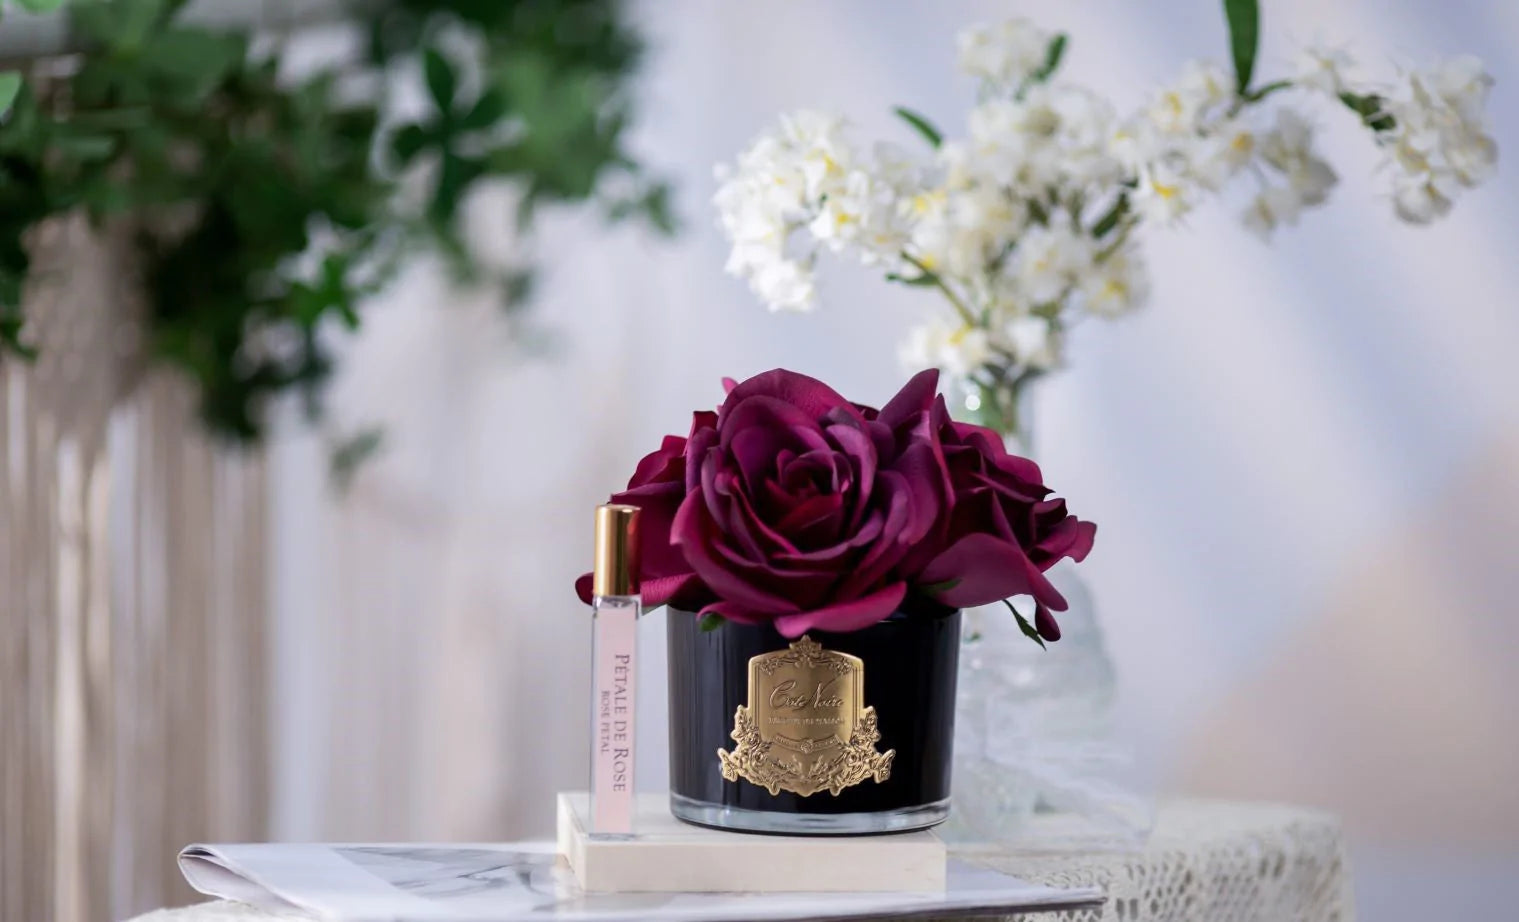 karminrote duftblume in schwarzer vase mit goldenem emblem zusammen mit rose petale duftspray auf einem buch.